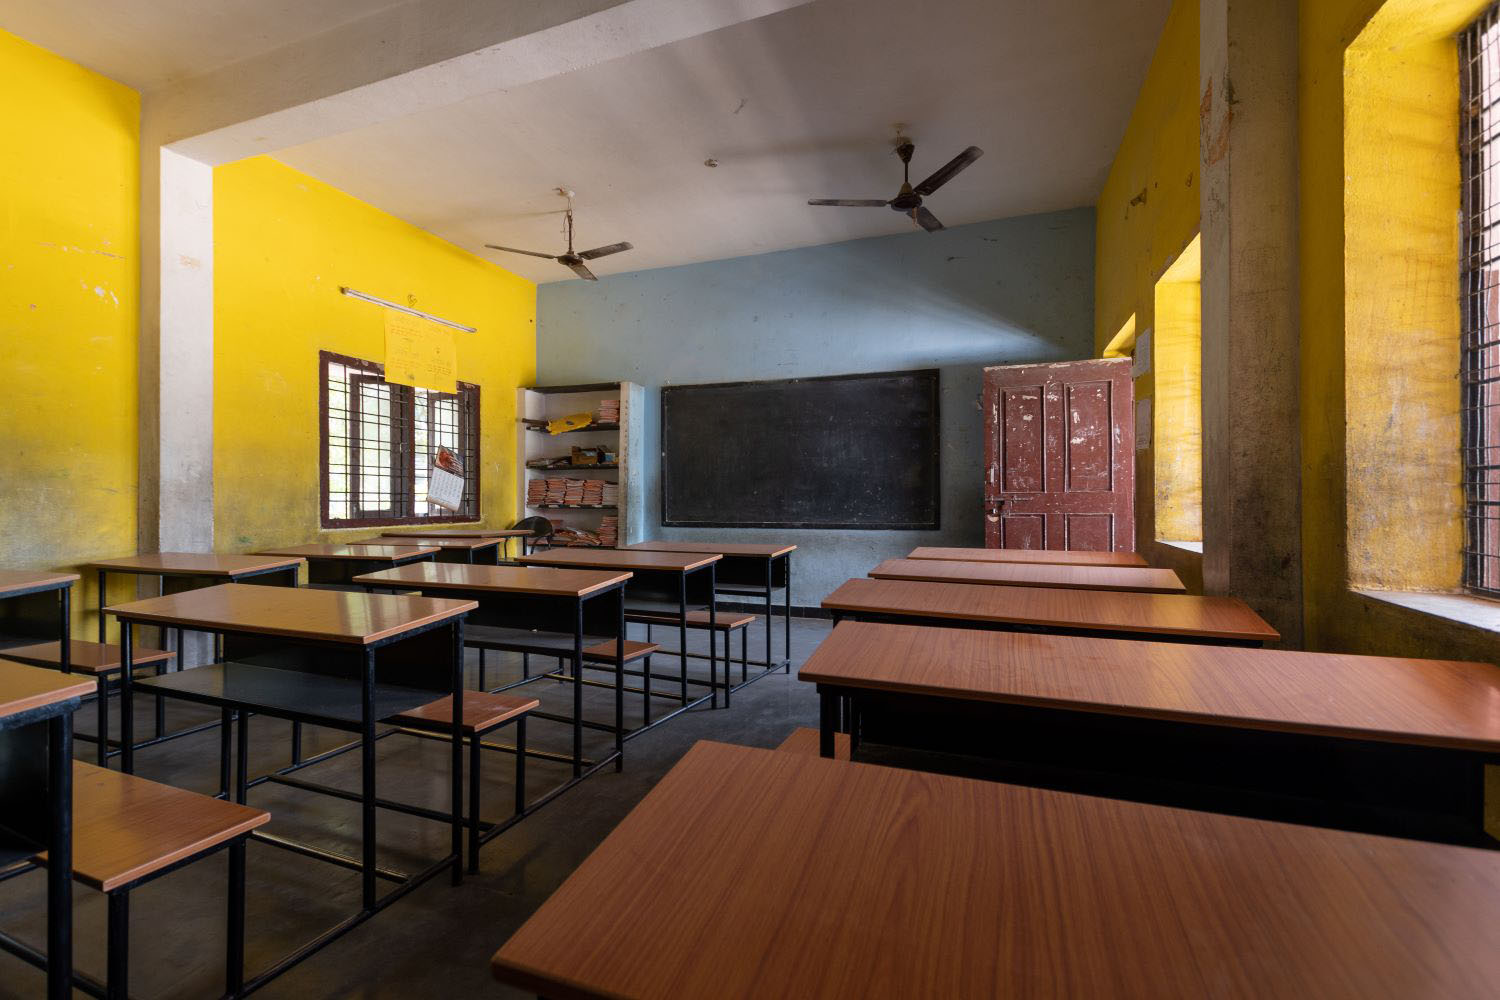 Empty classroom with desks in school classroom